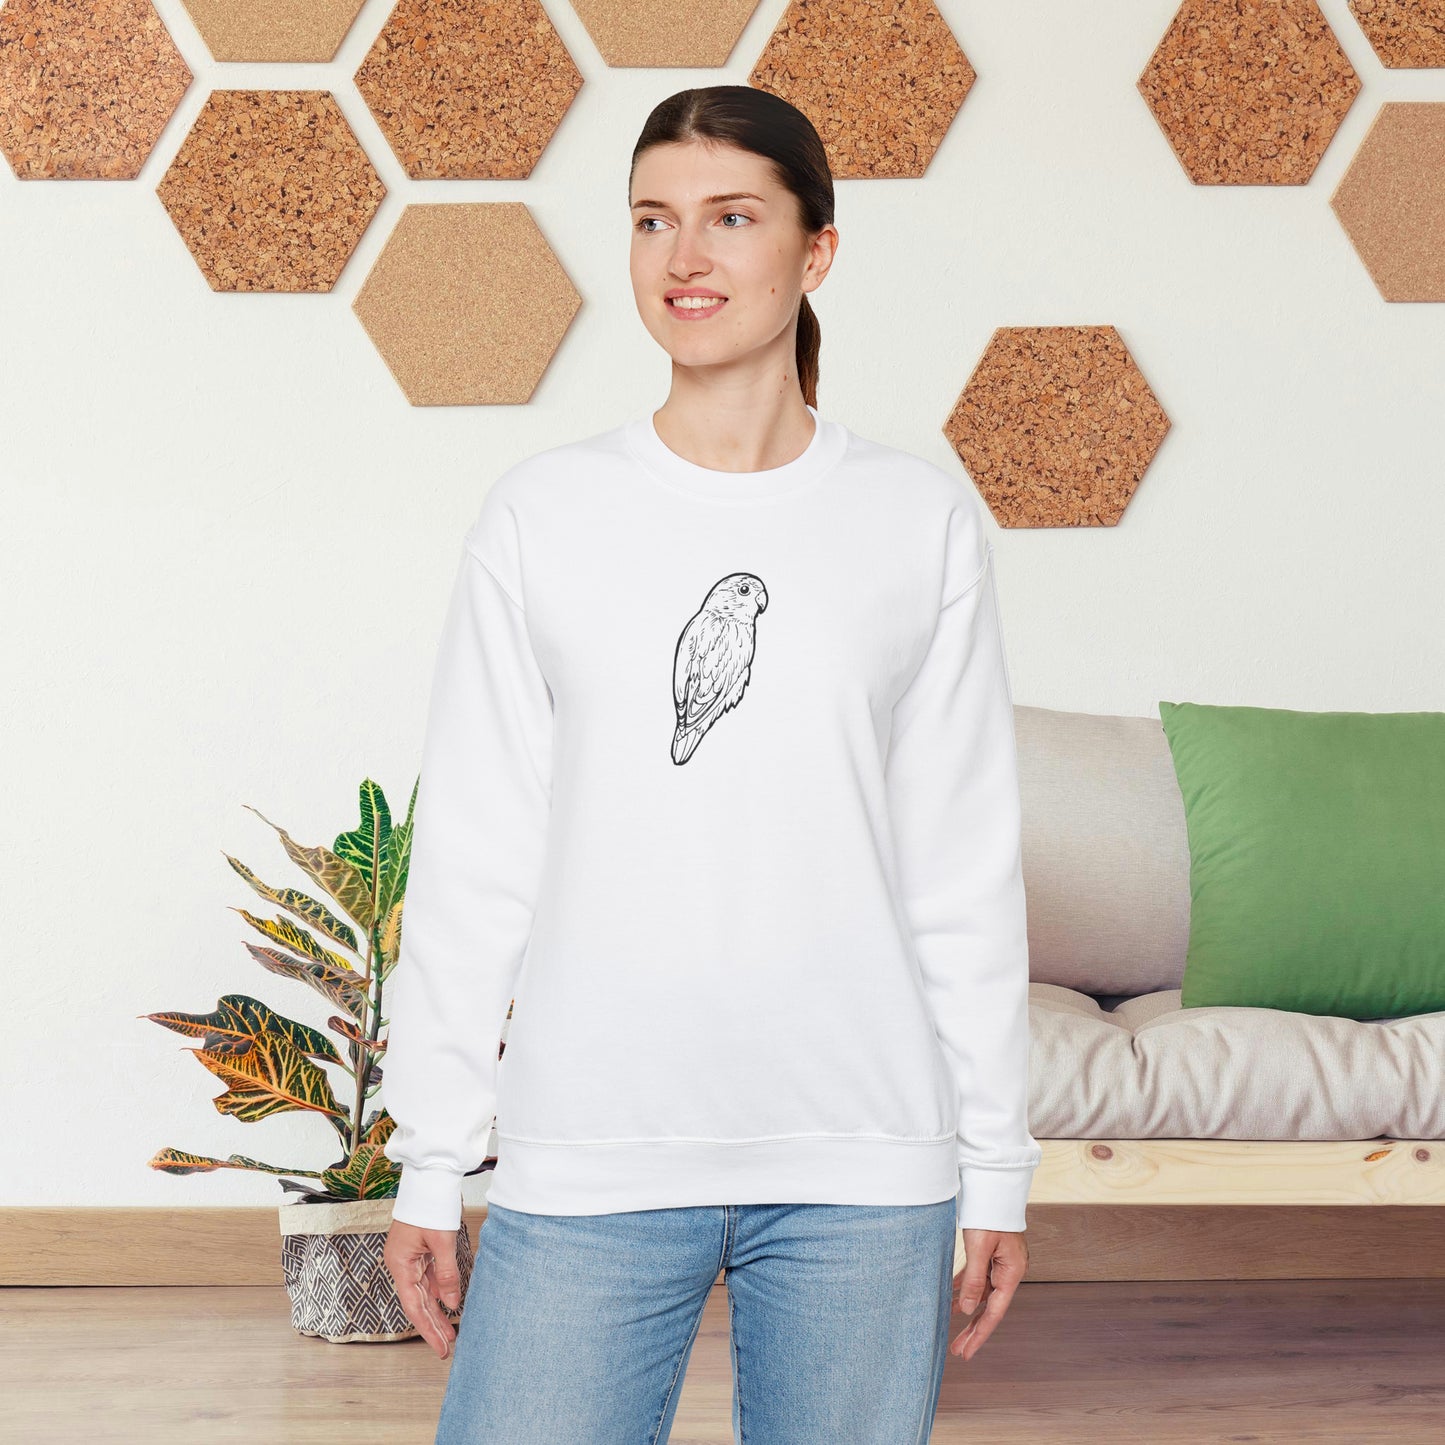 Cuddly Lovebird, Line Art Crew Neck Sweatshirt